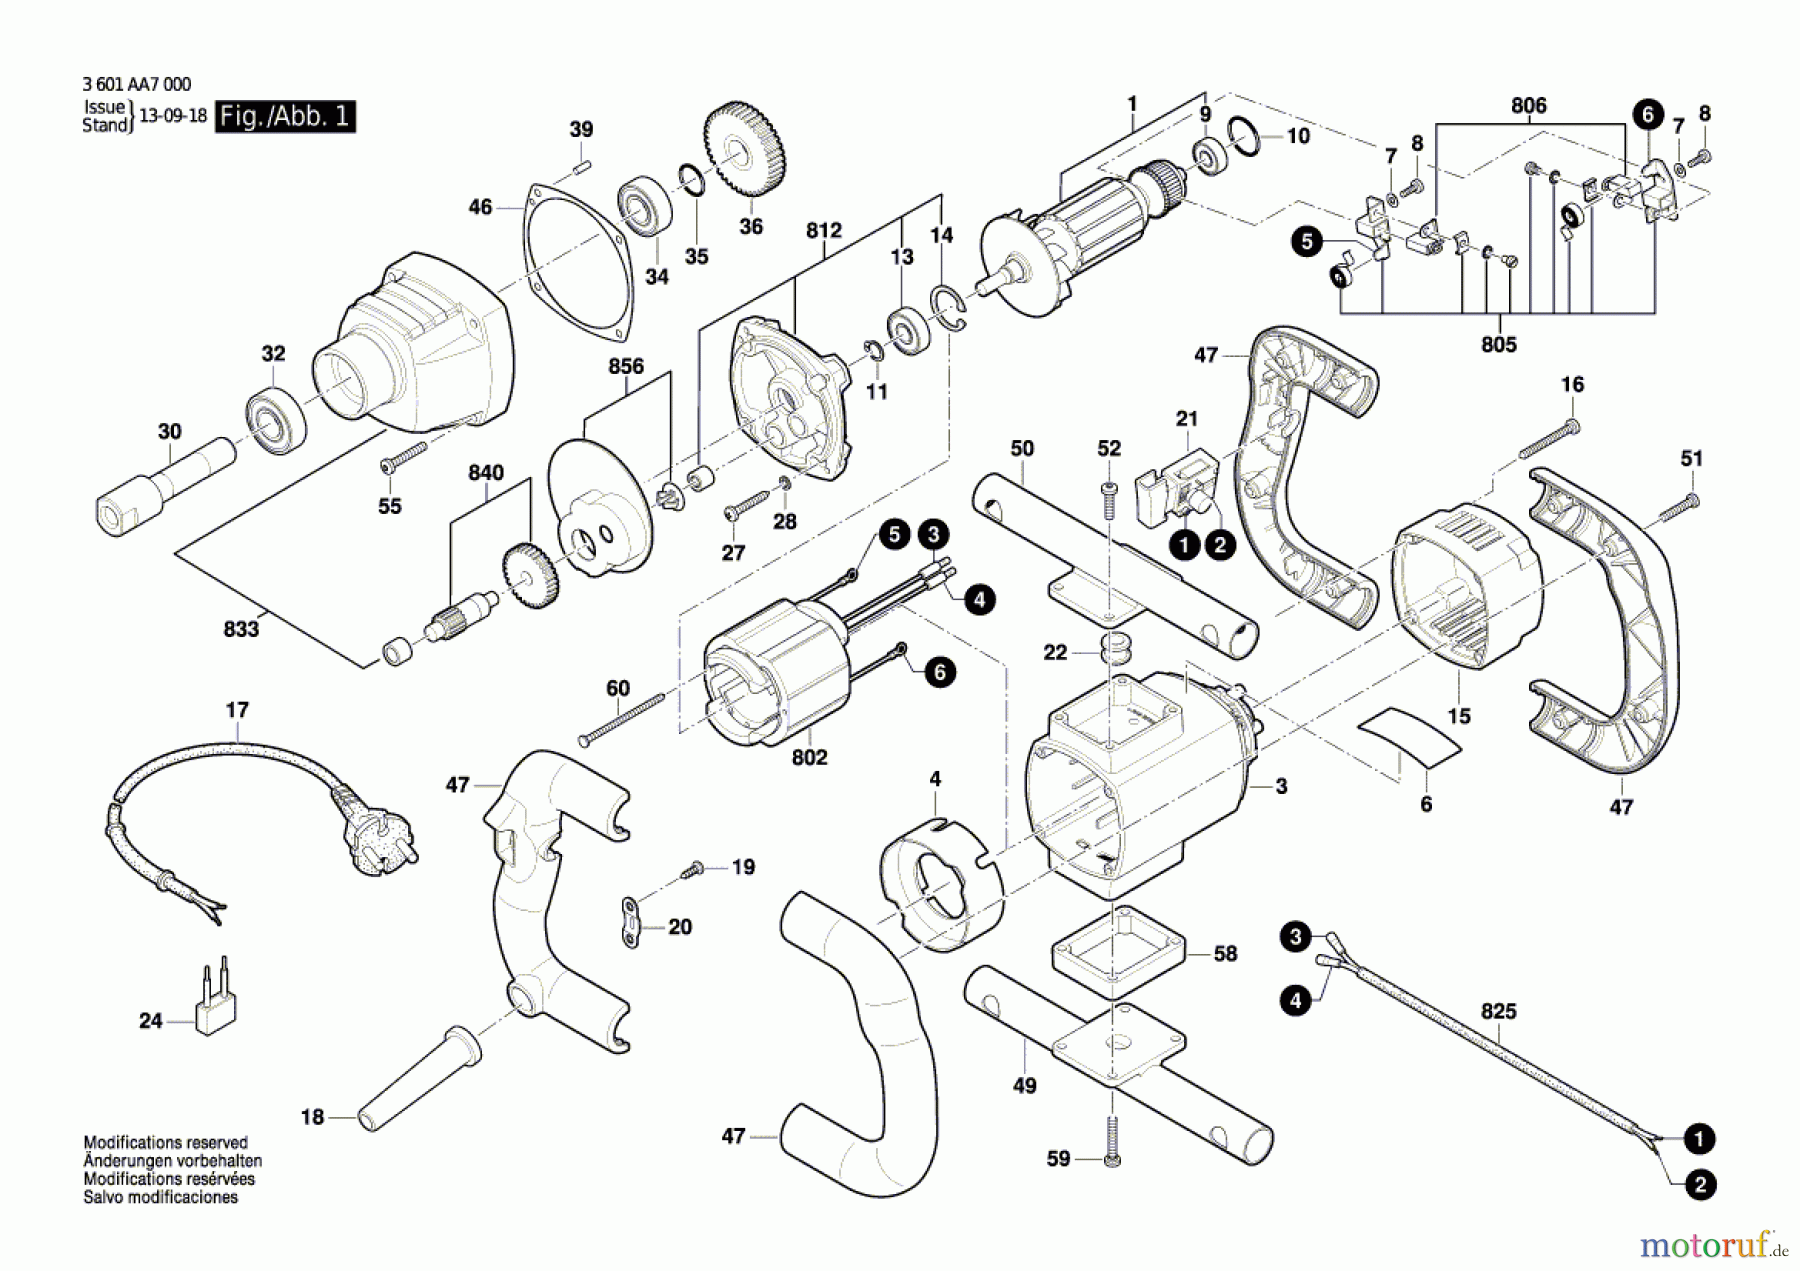  Bosch Werkzeug Rührwerk GRW 12 E Seite 1